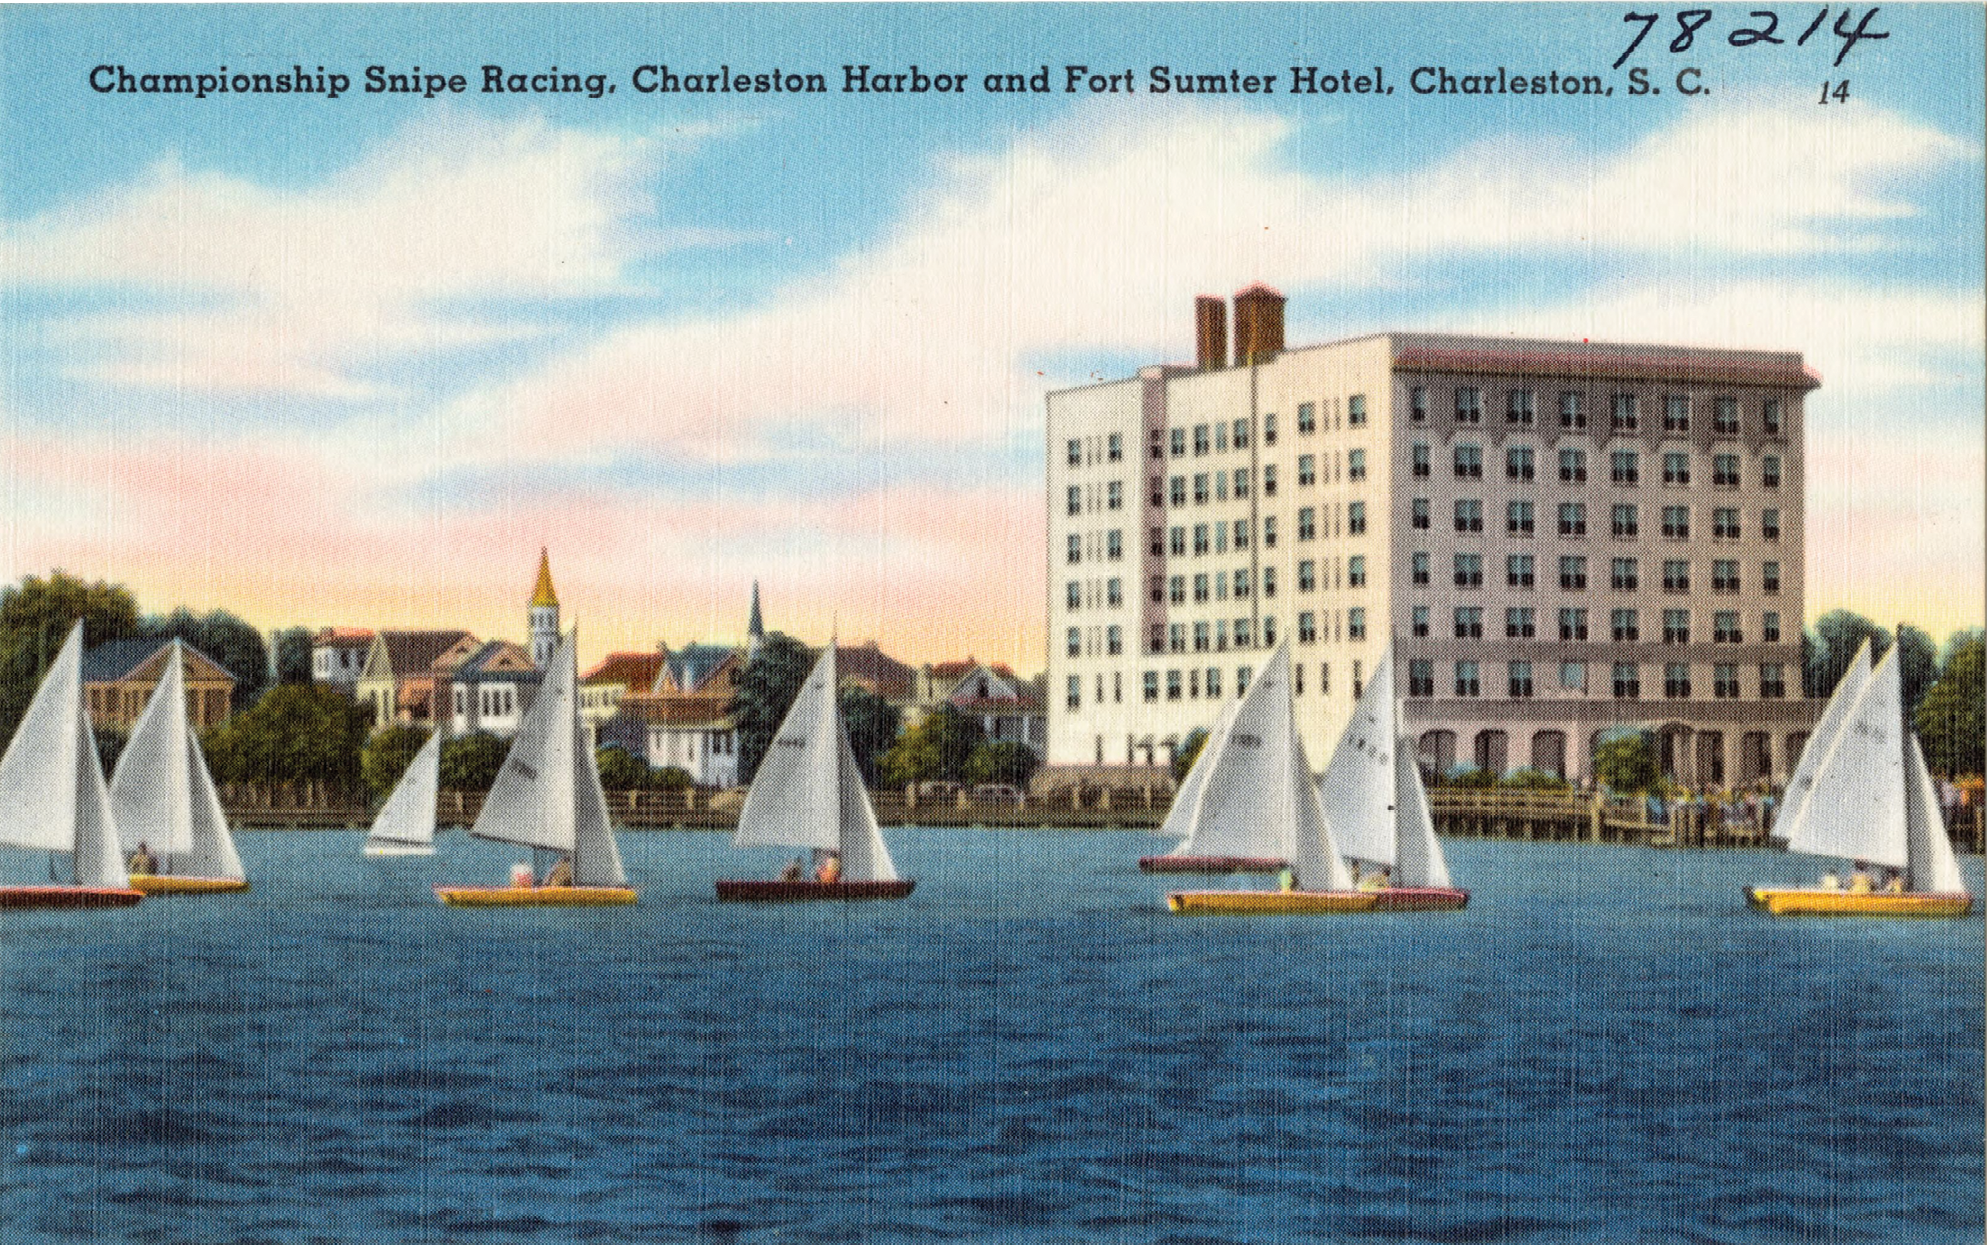 At Full Sail: “Championship Snipe Racing, Charleston Harbor and Fort Sumter Hotel, Charleston, SC”